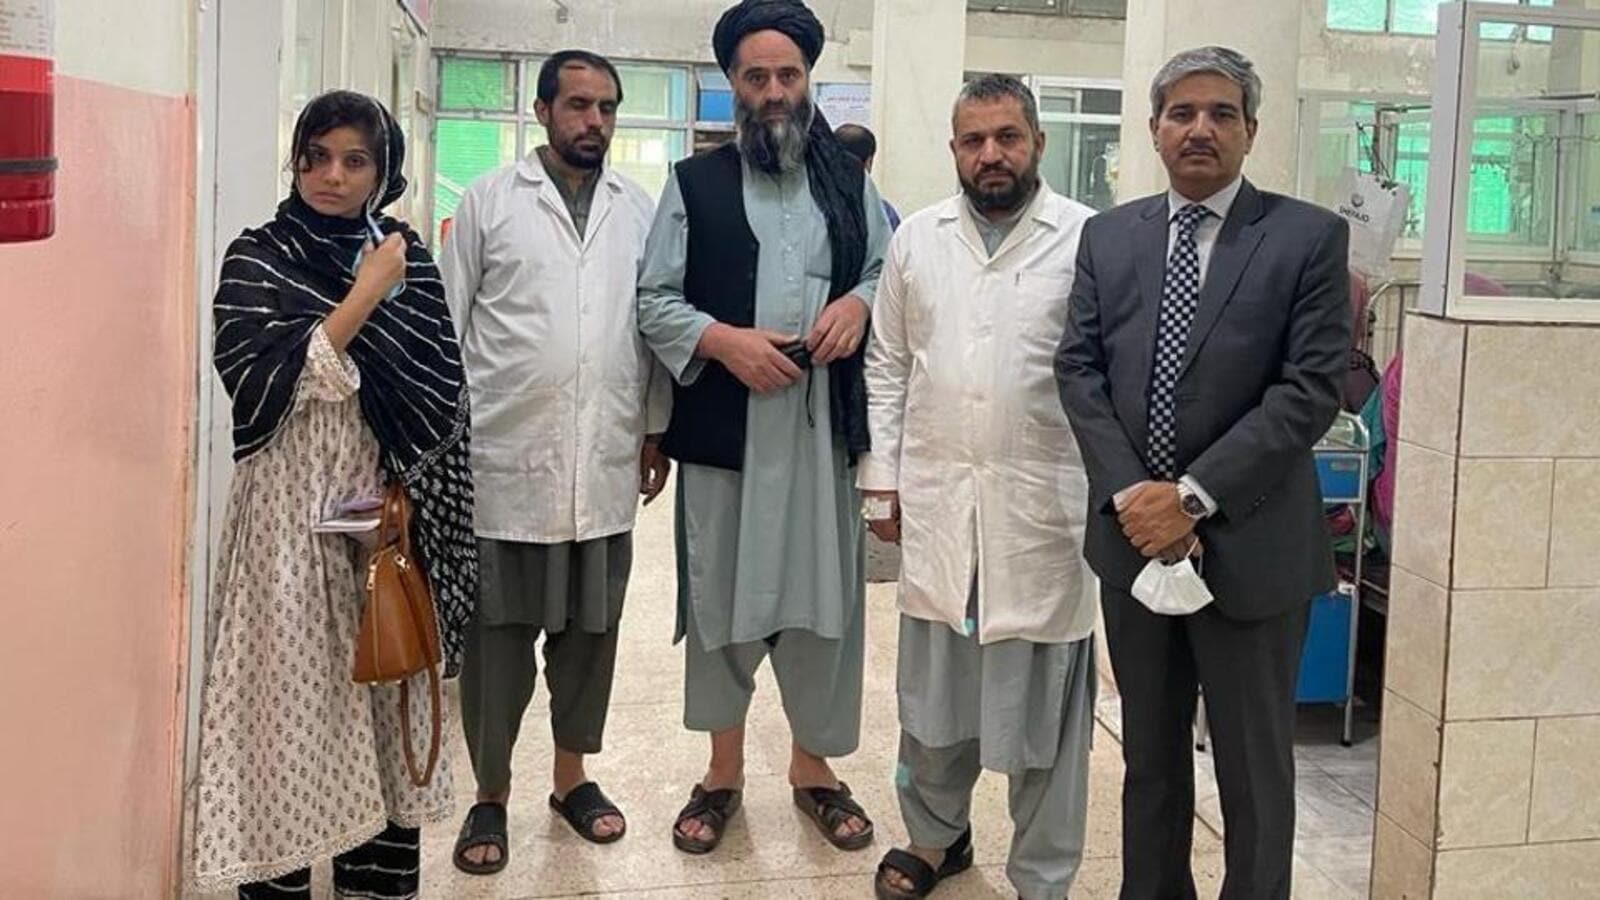 Mujer diplomática forma parte del escuadrón indio que se reúne con los líderes talibanes en Kabul |  Últimas noticias India